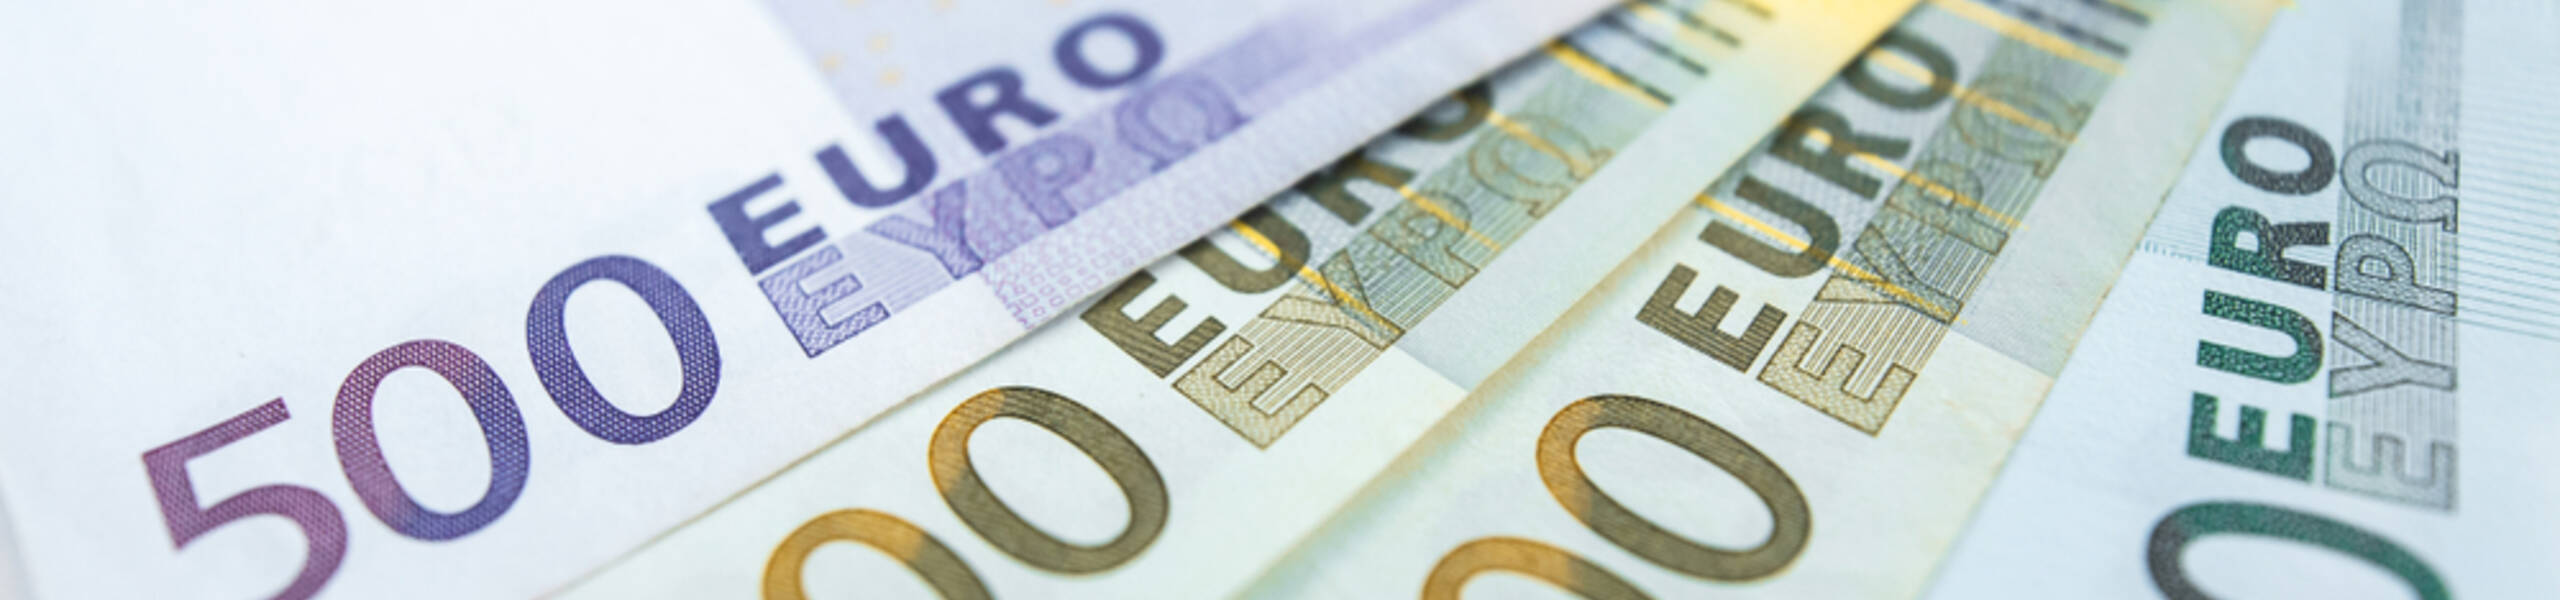 هل سيتباطأ البنك المركزي الأوروبي في رفع أسعار الفائدة مع تباطؤ التضخم في منطقة اليورو؟